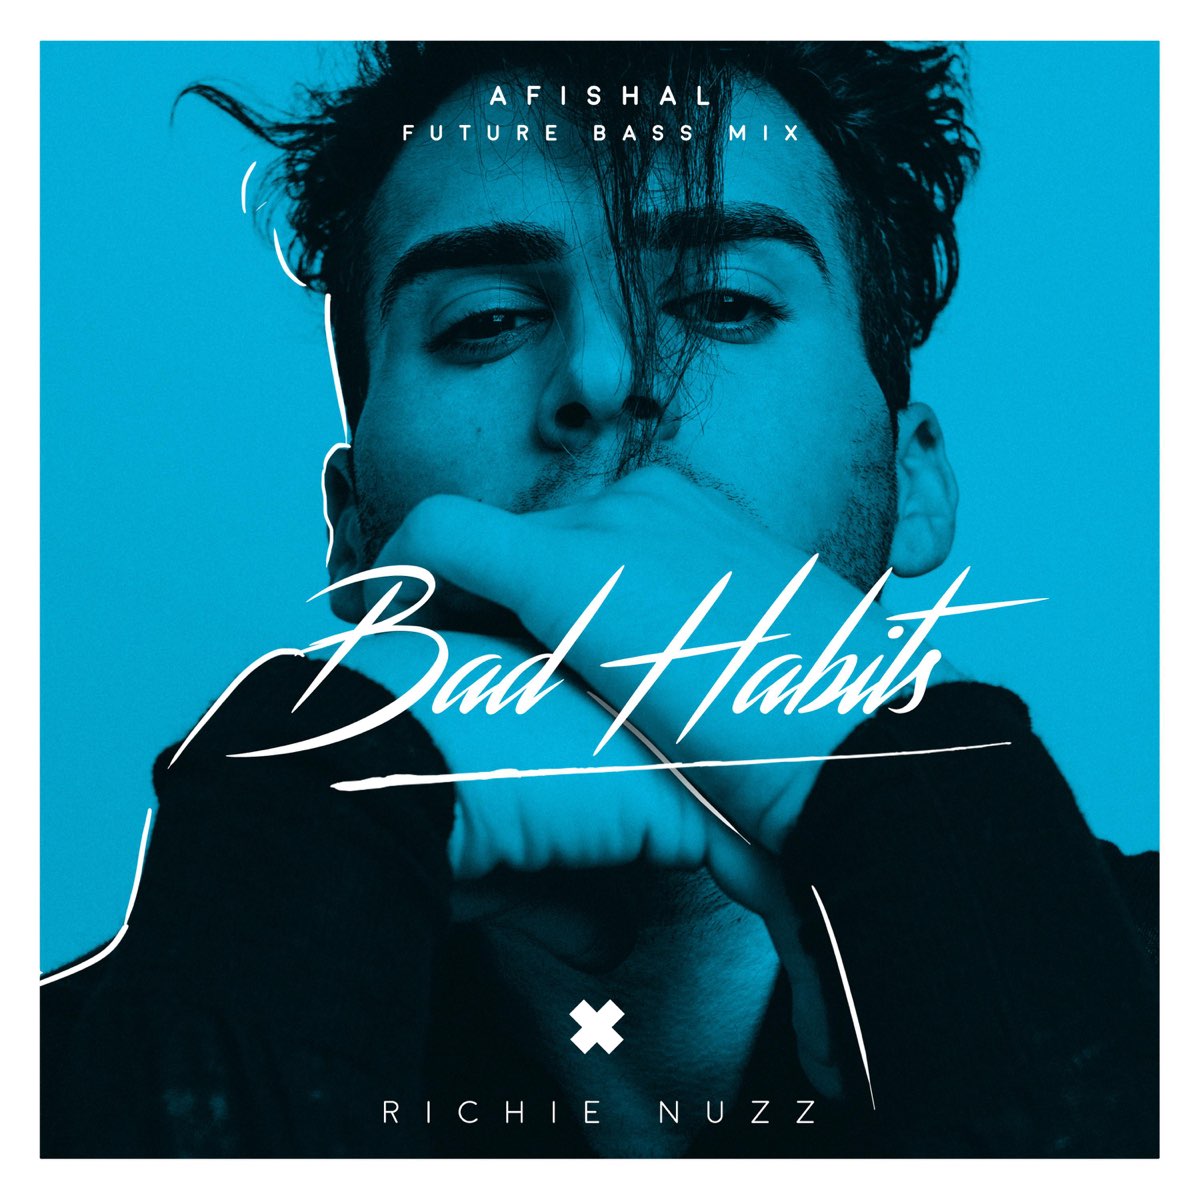 Bad Habits Mix) - Single by Richie Nuzz & AFISHAL on Apple Music